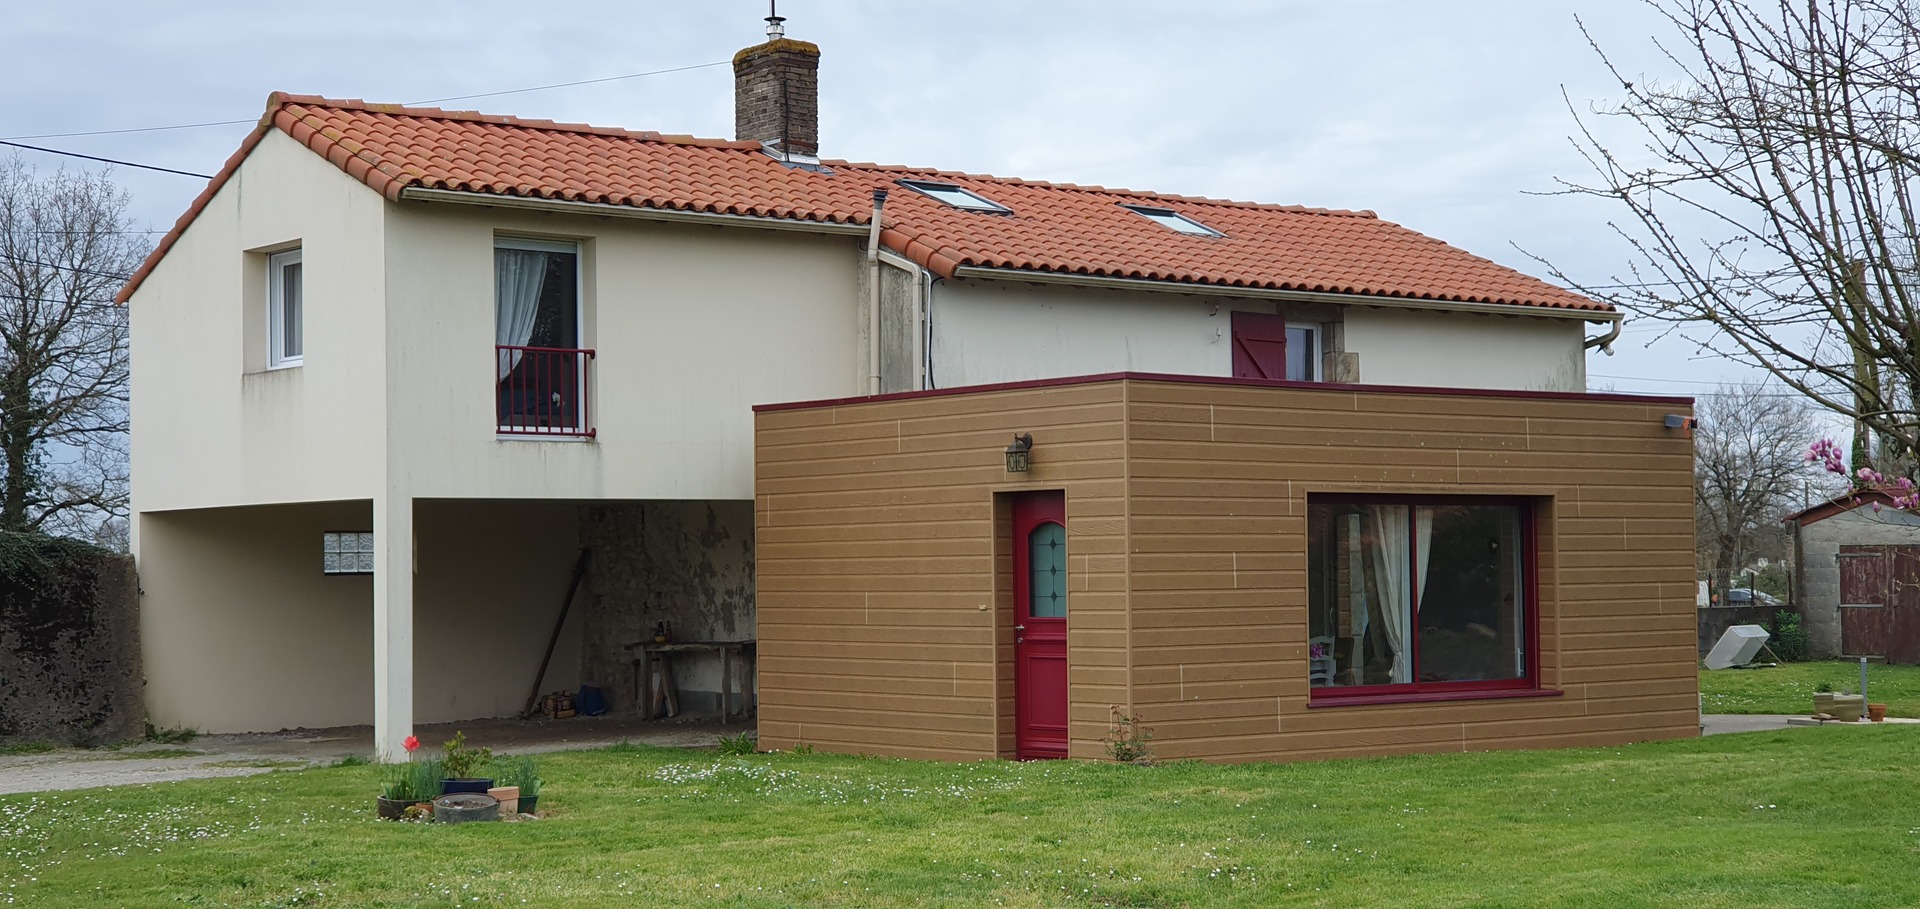 Travaux de rénovation de maison au May sur Evre par PSMO, maitre d'oeuvre